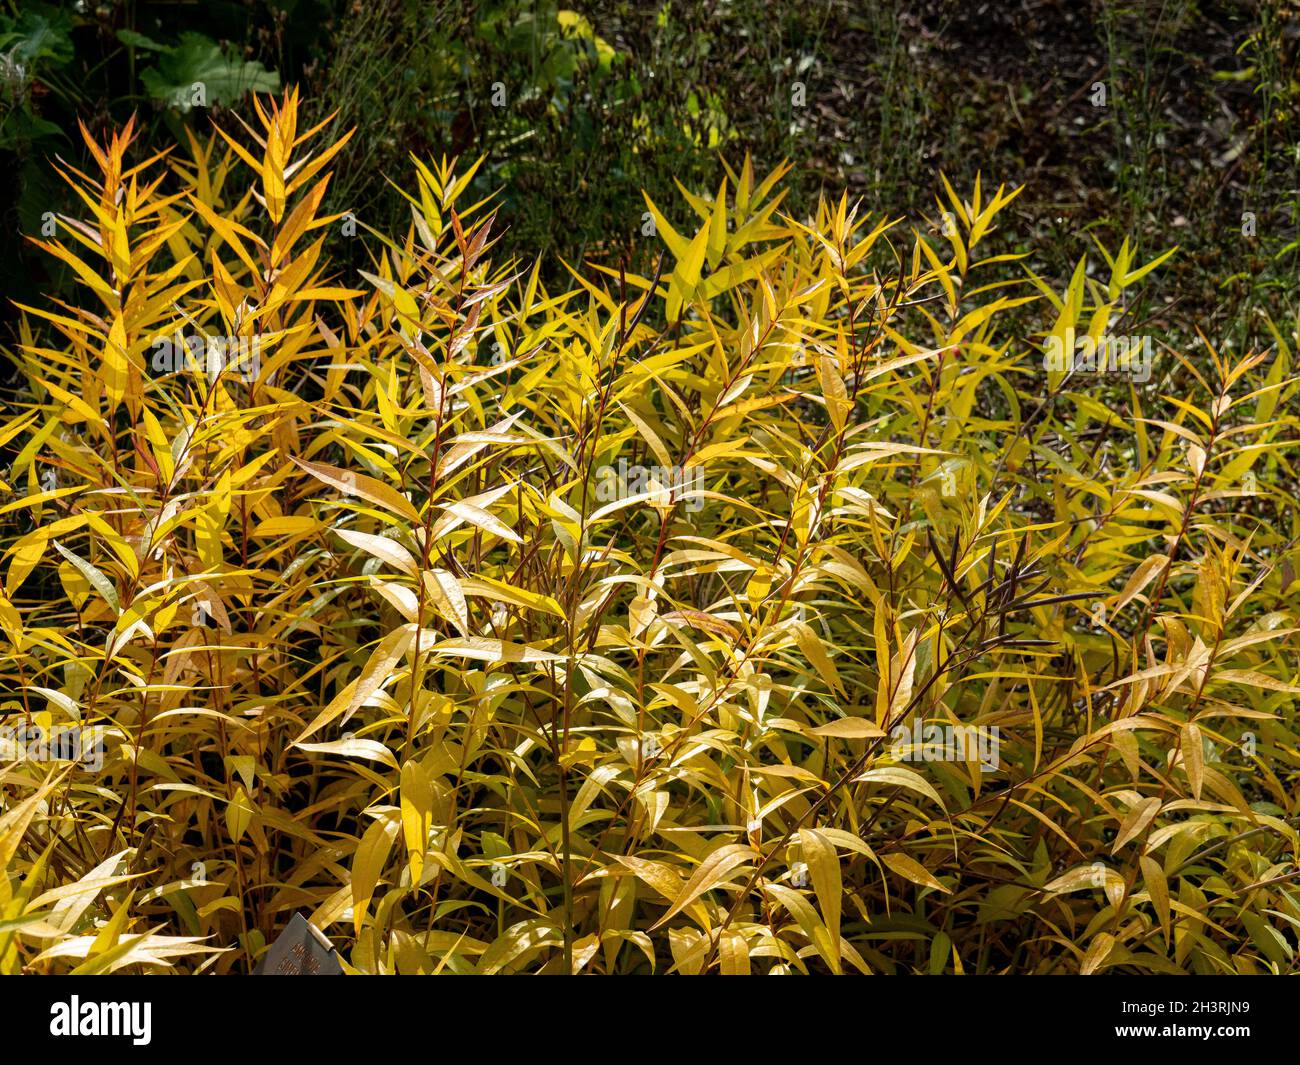 The striking golden autumn foliage of Amsonia sinensis Stock Photo